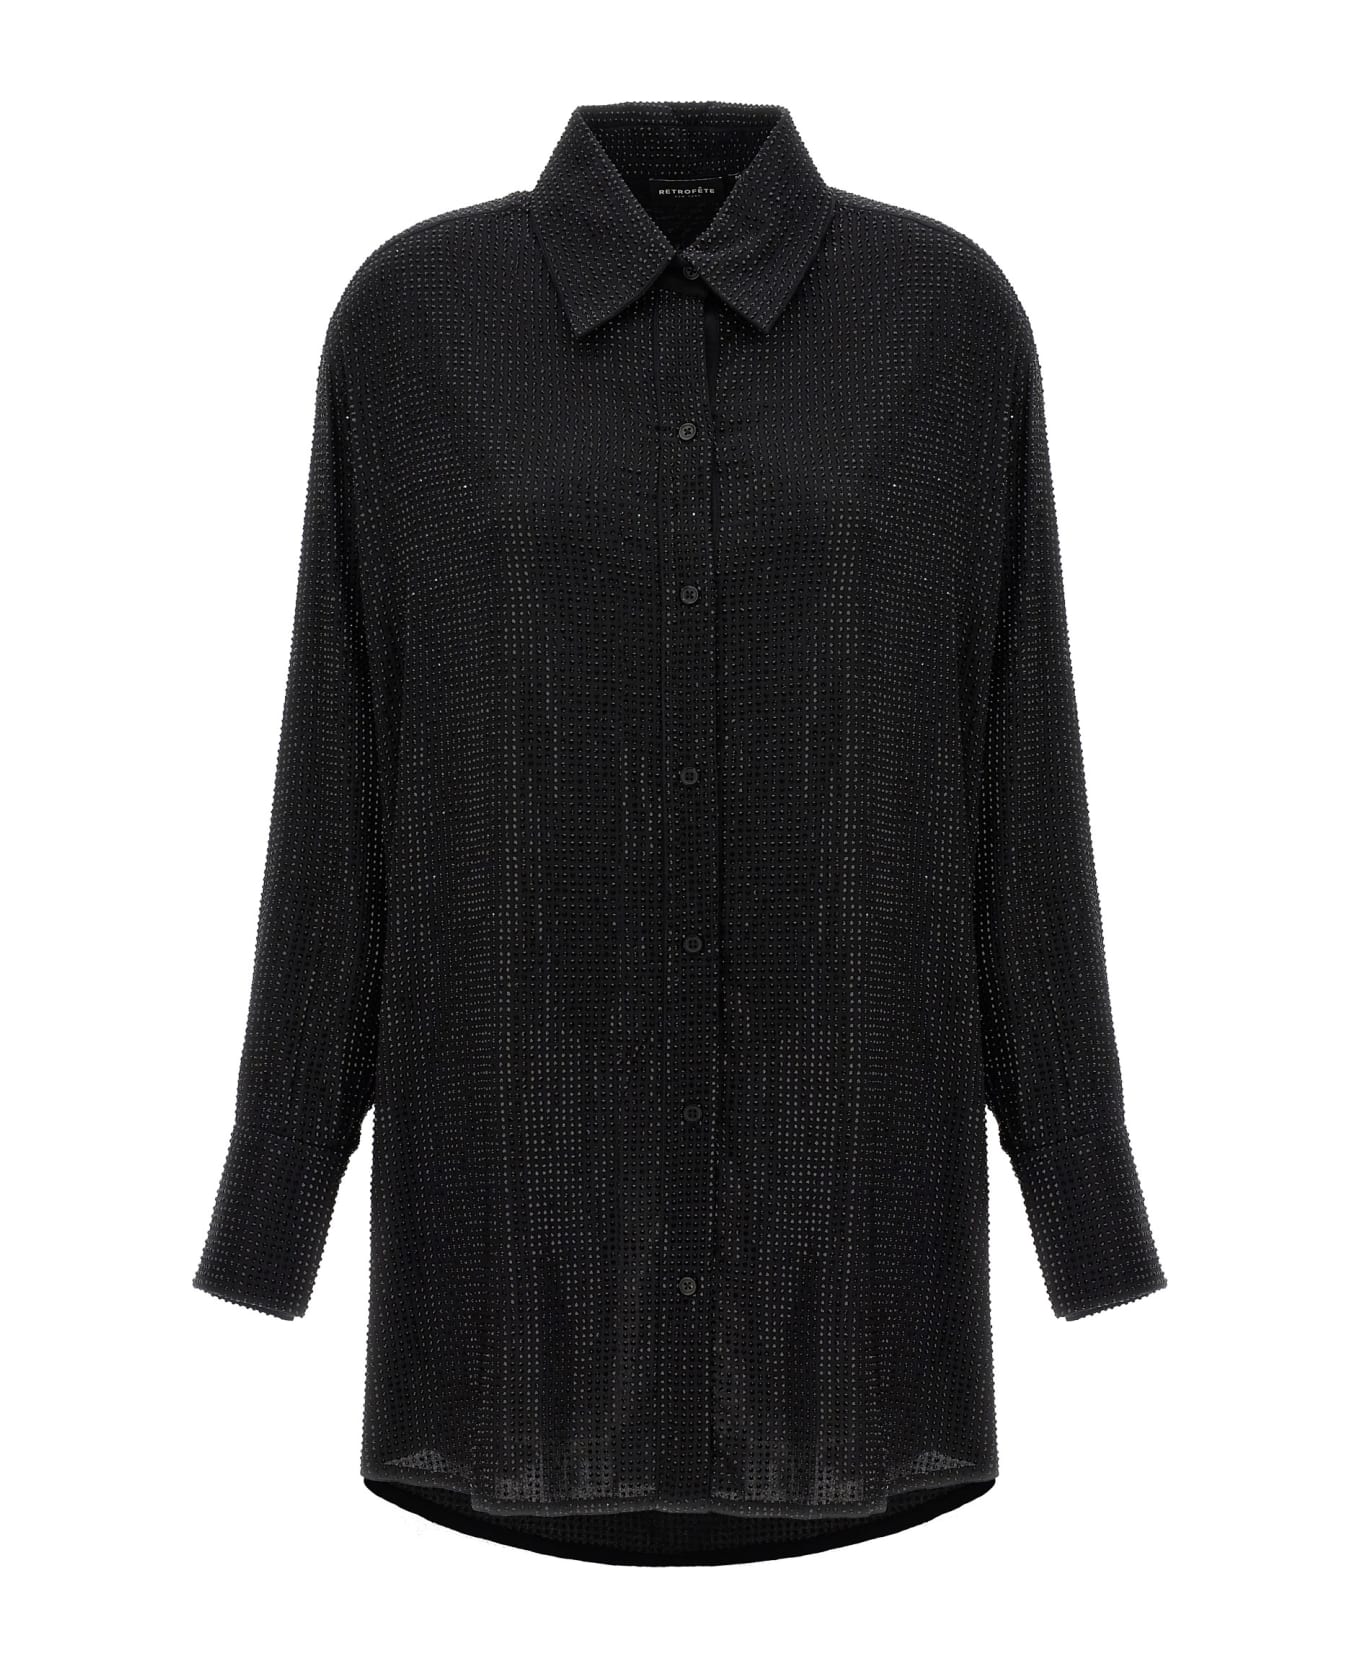 retrofete 'maddox' Shirt Dress - Black   シャツ